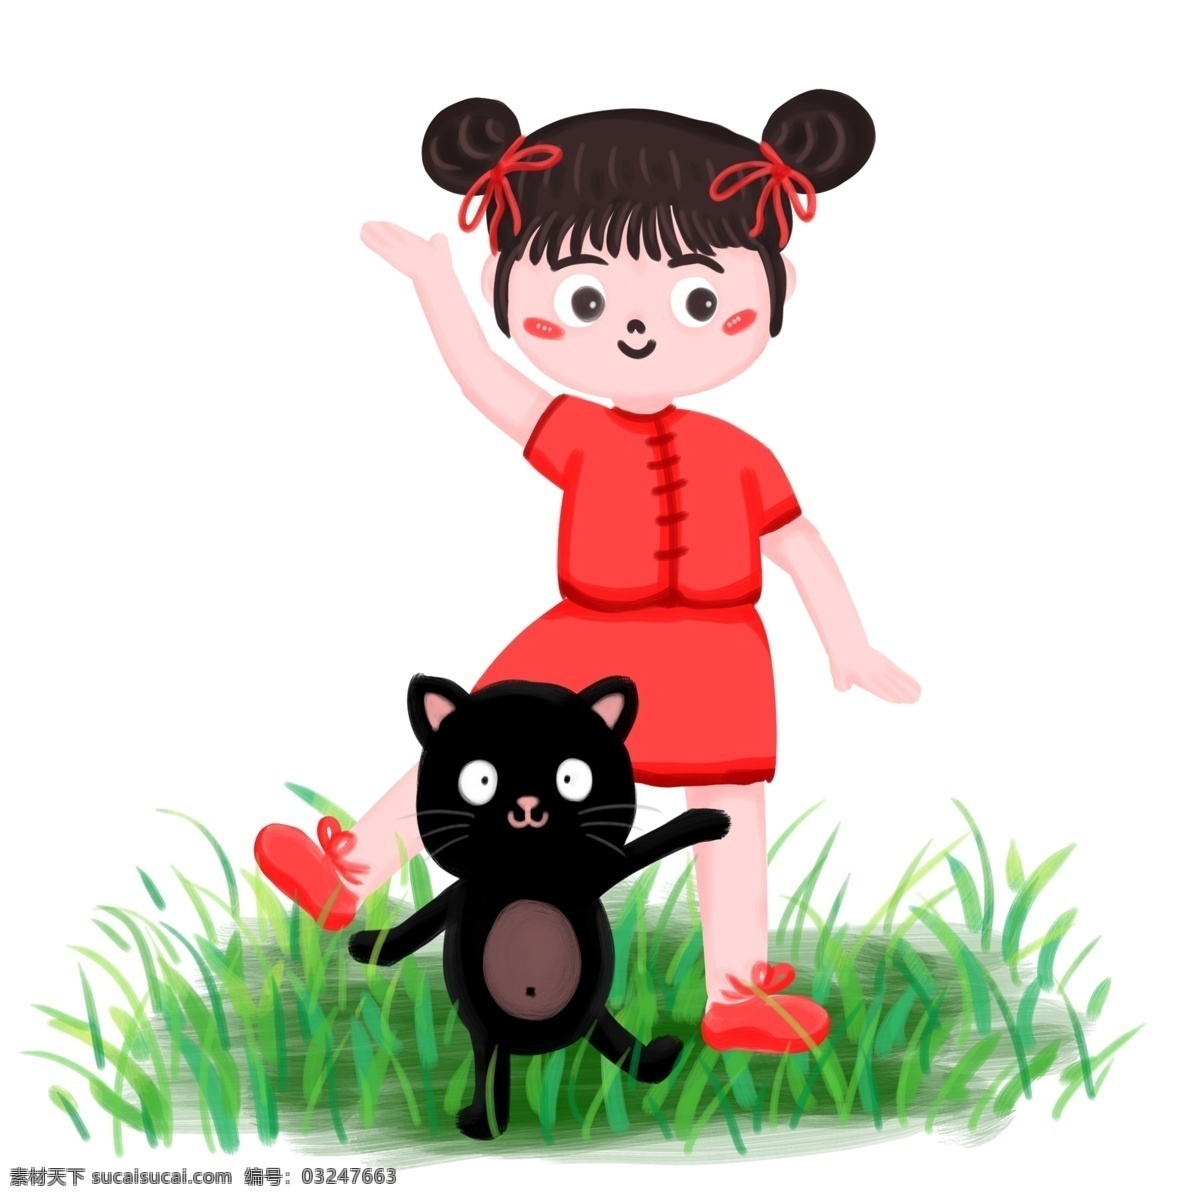 插 画风 春天 草地 女孩 猫咪 跳舞 插画风 草 青草 叶 叶子 红裙 女子 黑猫 猫 小猫 动物 人物 女 大自然 自然